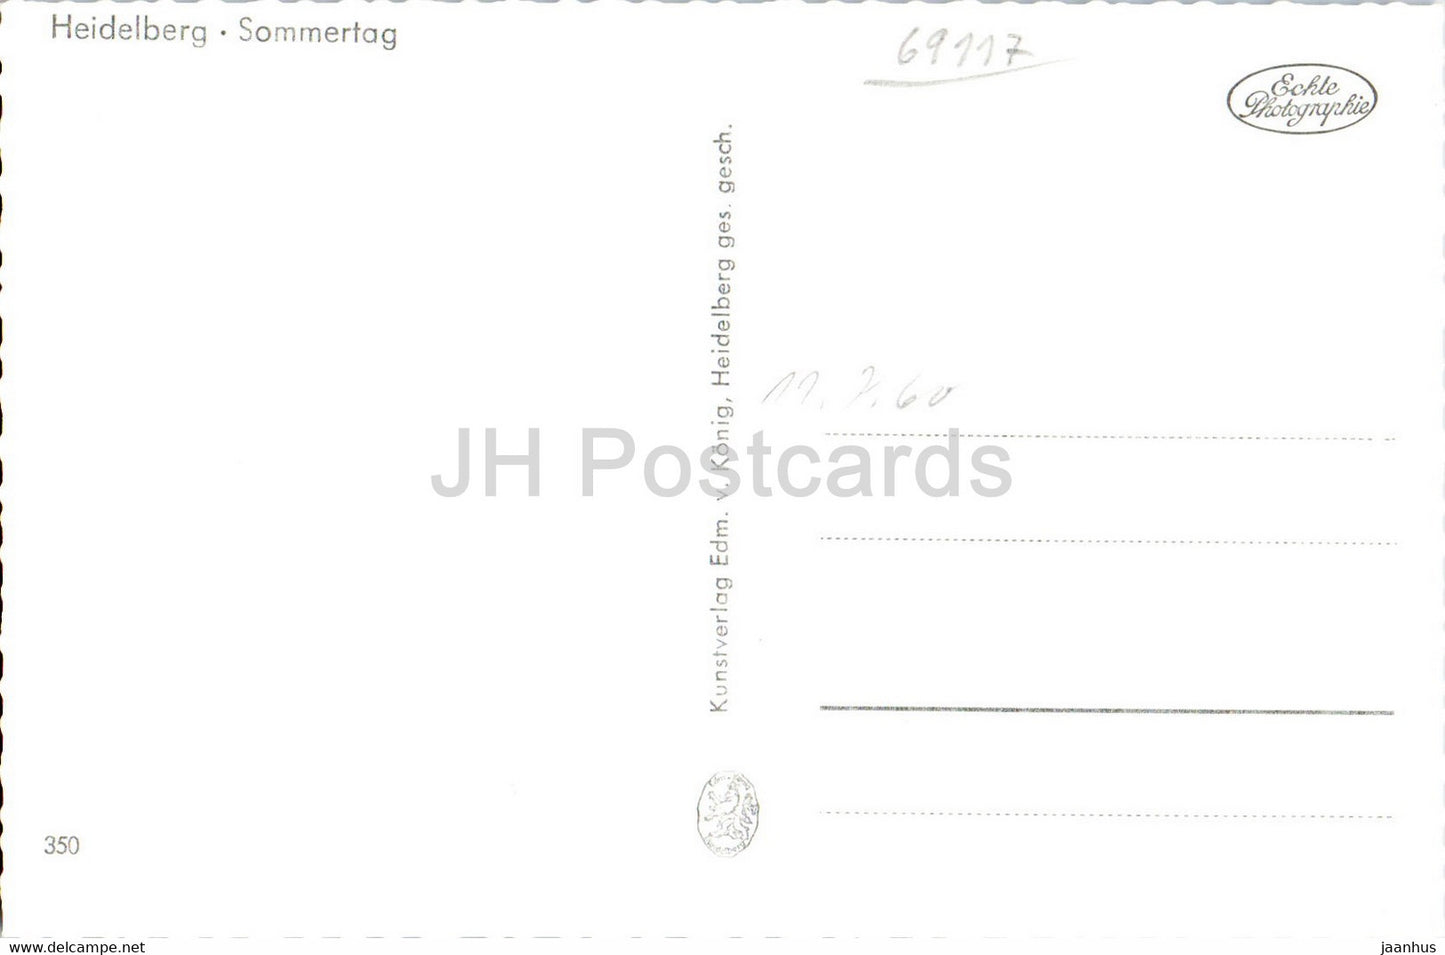 Heidelberg - Sommertag - ship - old postcard - Germany - unused